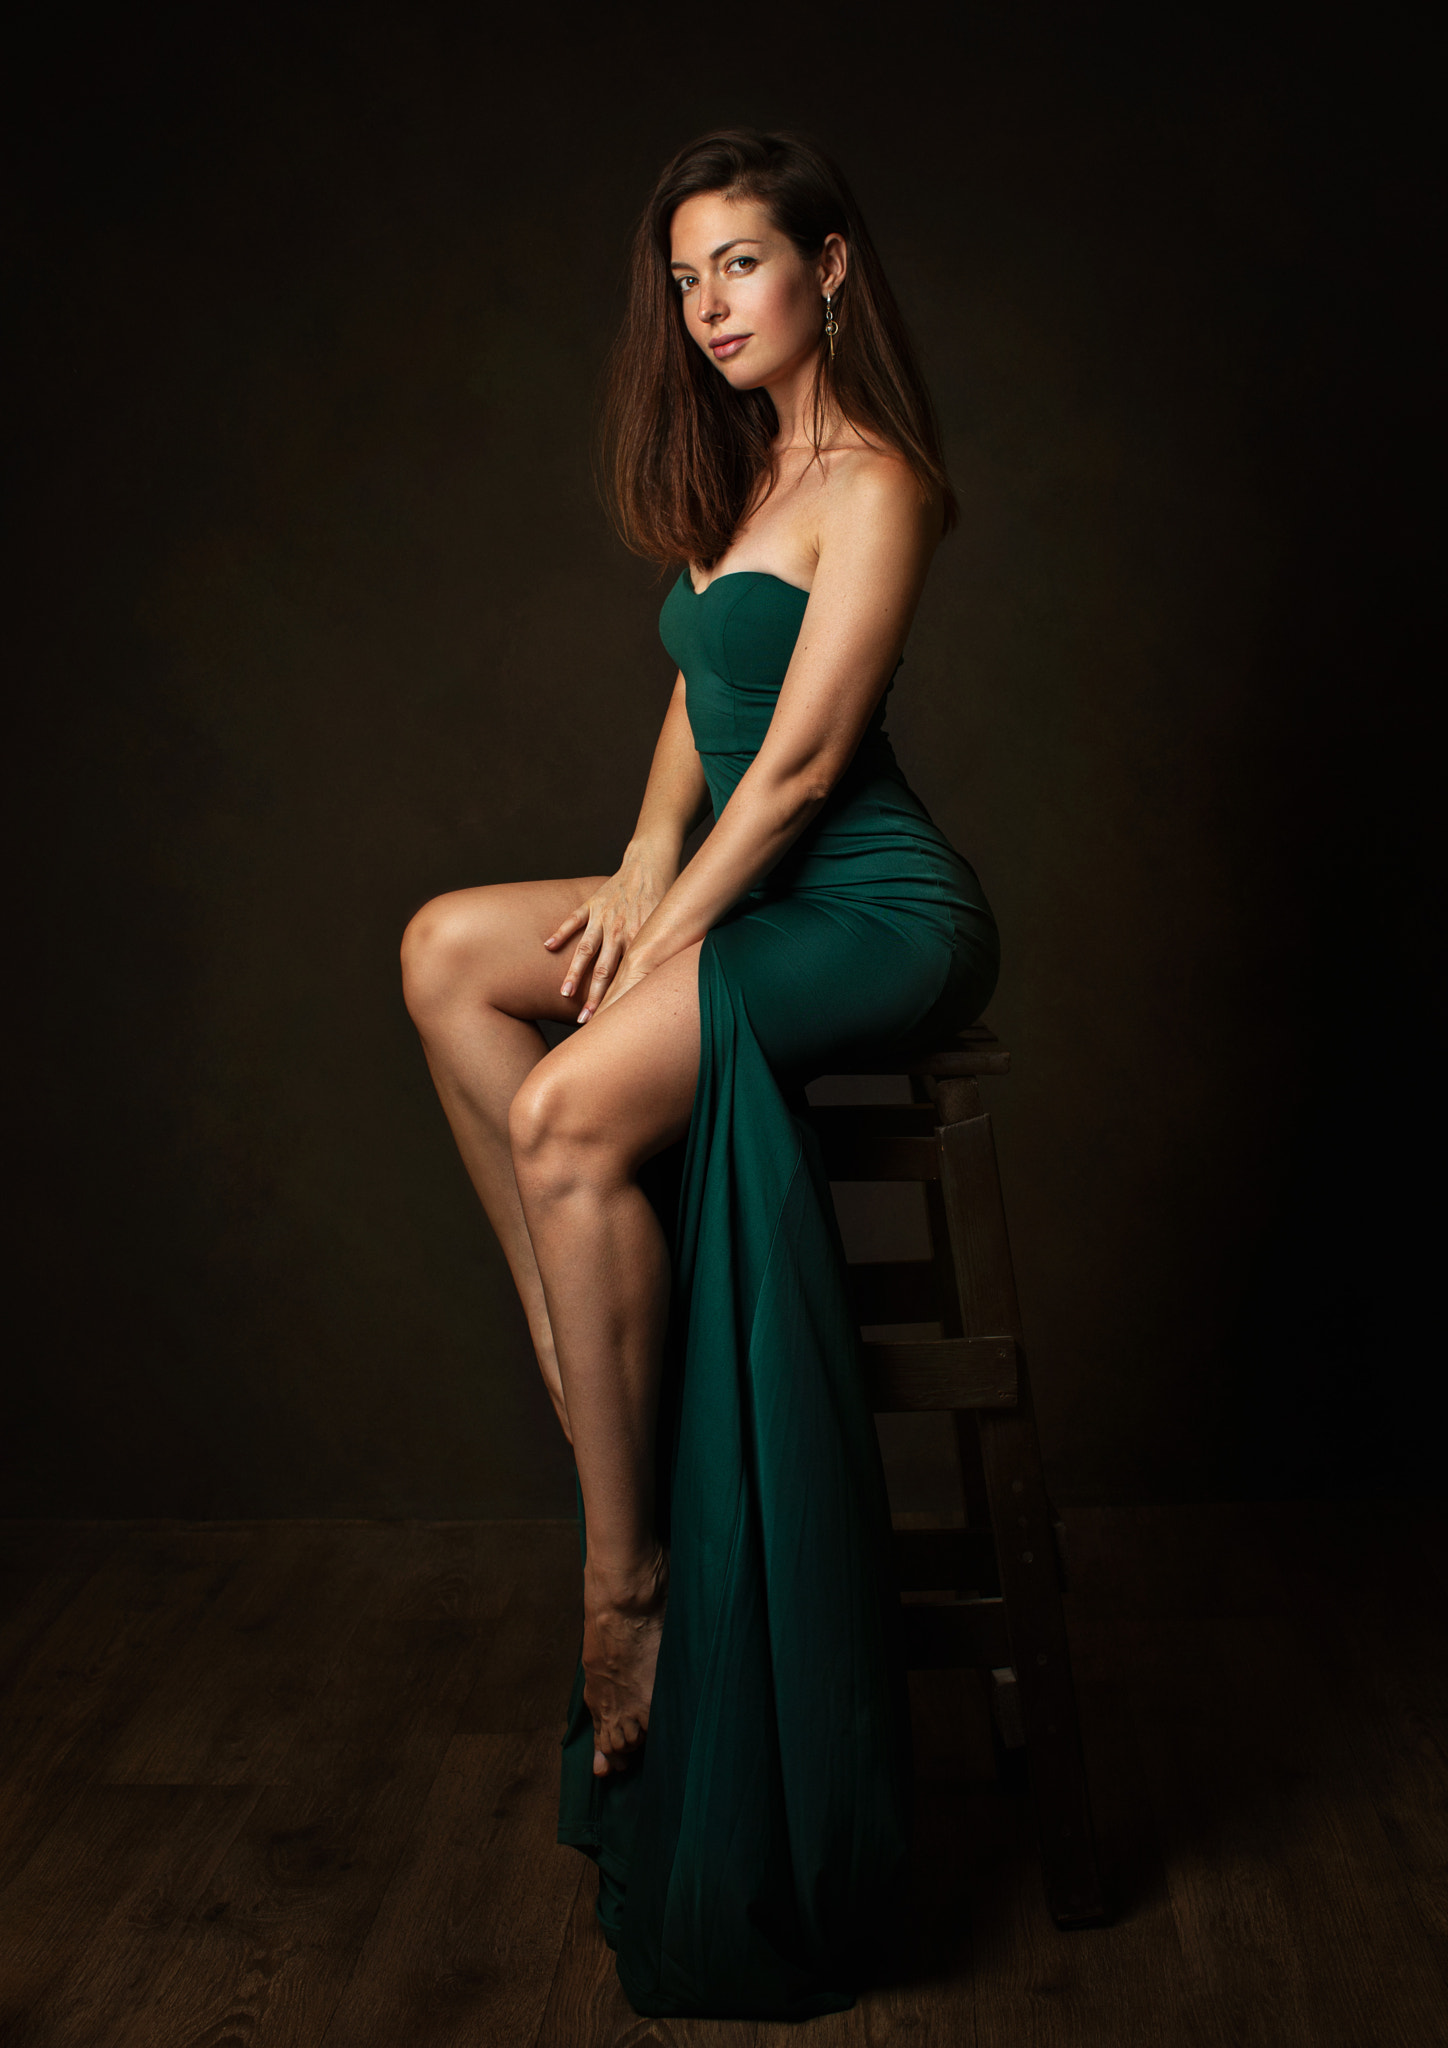 Zachar Rise Women Brunette Long Hair Looking At Viewer Dress Green Clothing Barefoot Chair 1448x2048